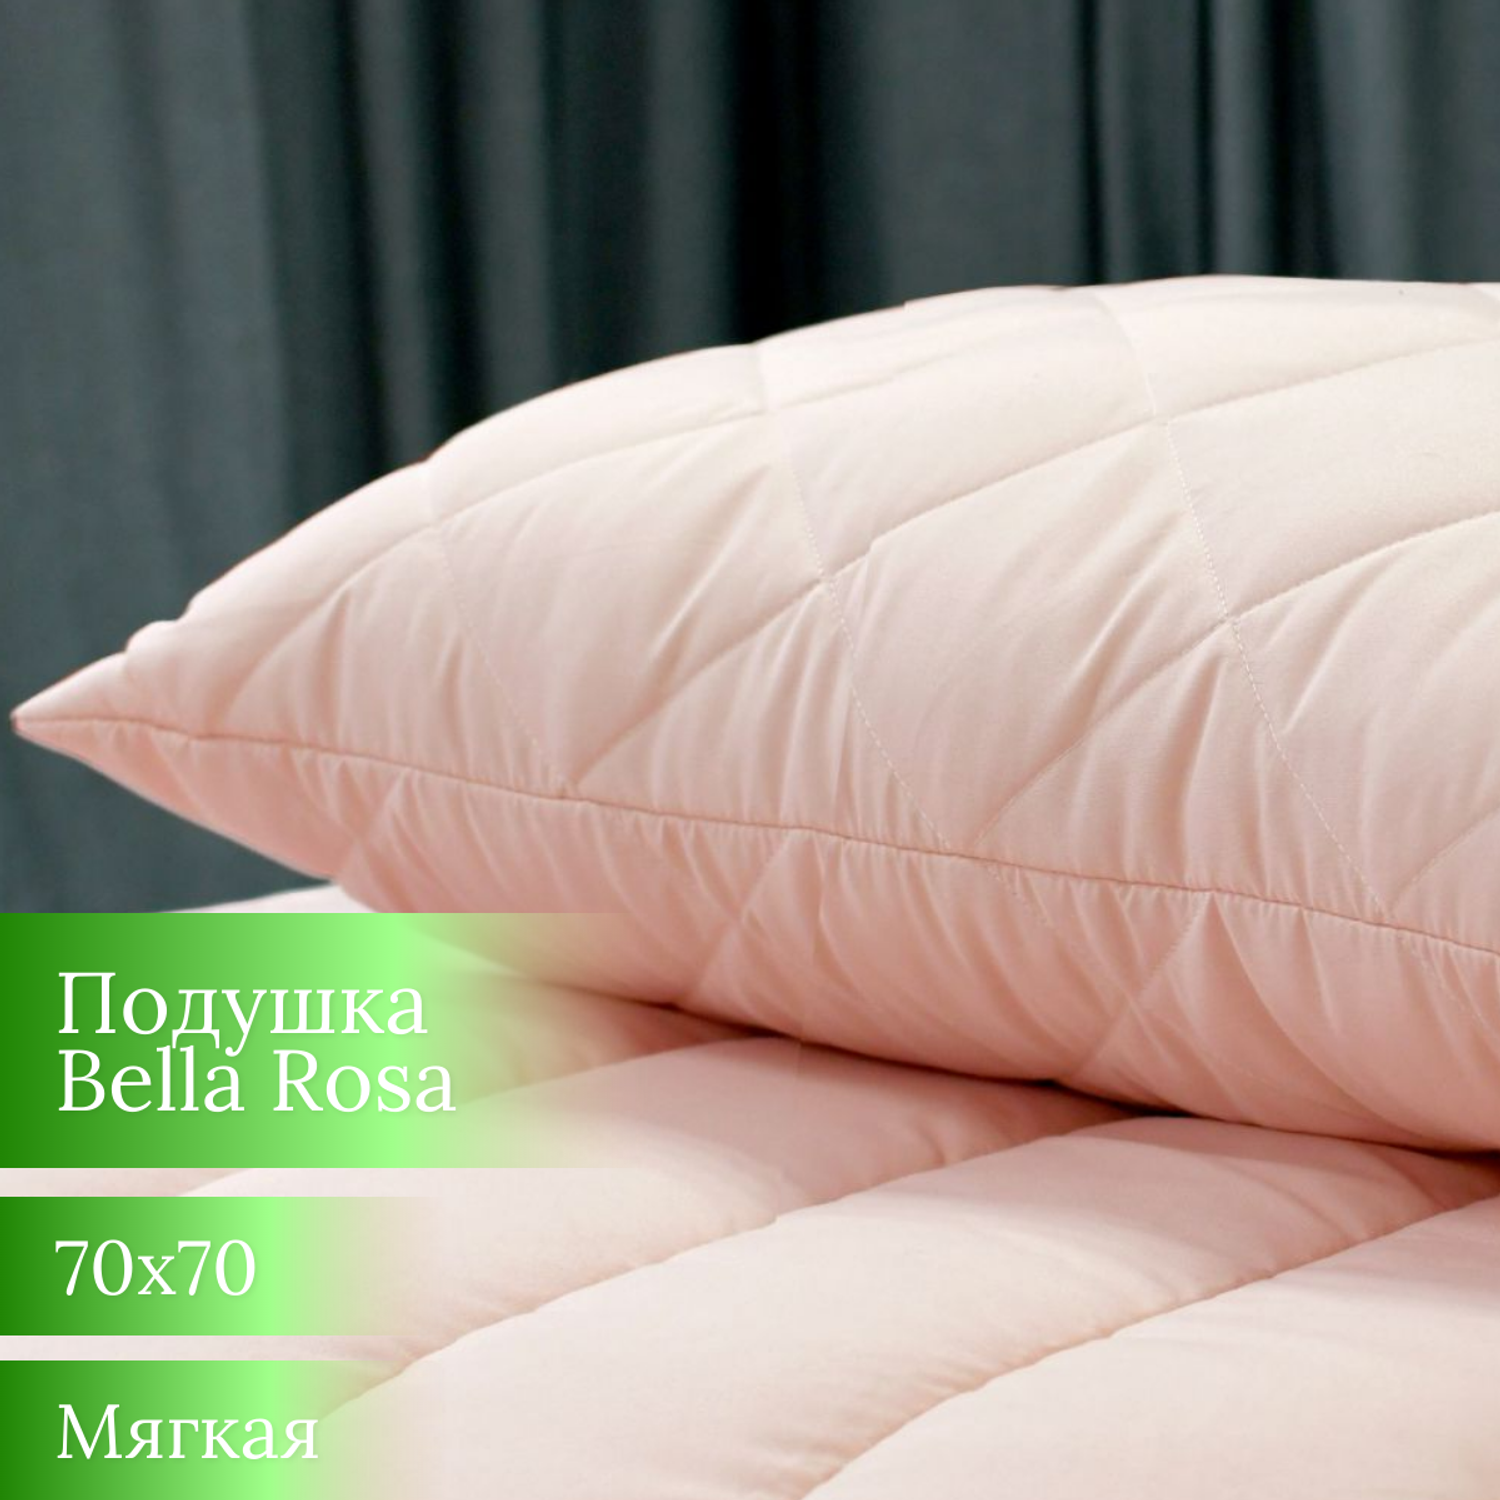 Подушка Мягкий сон Bella Rosa 70х70 см - фото 1